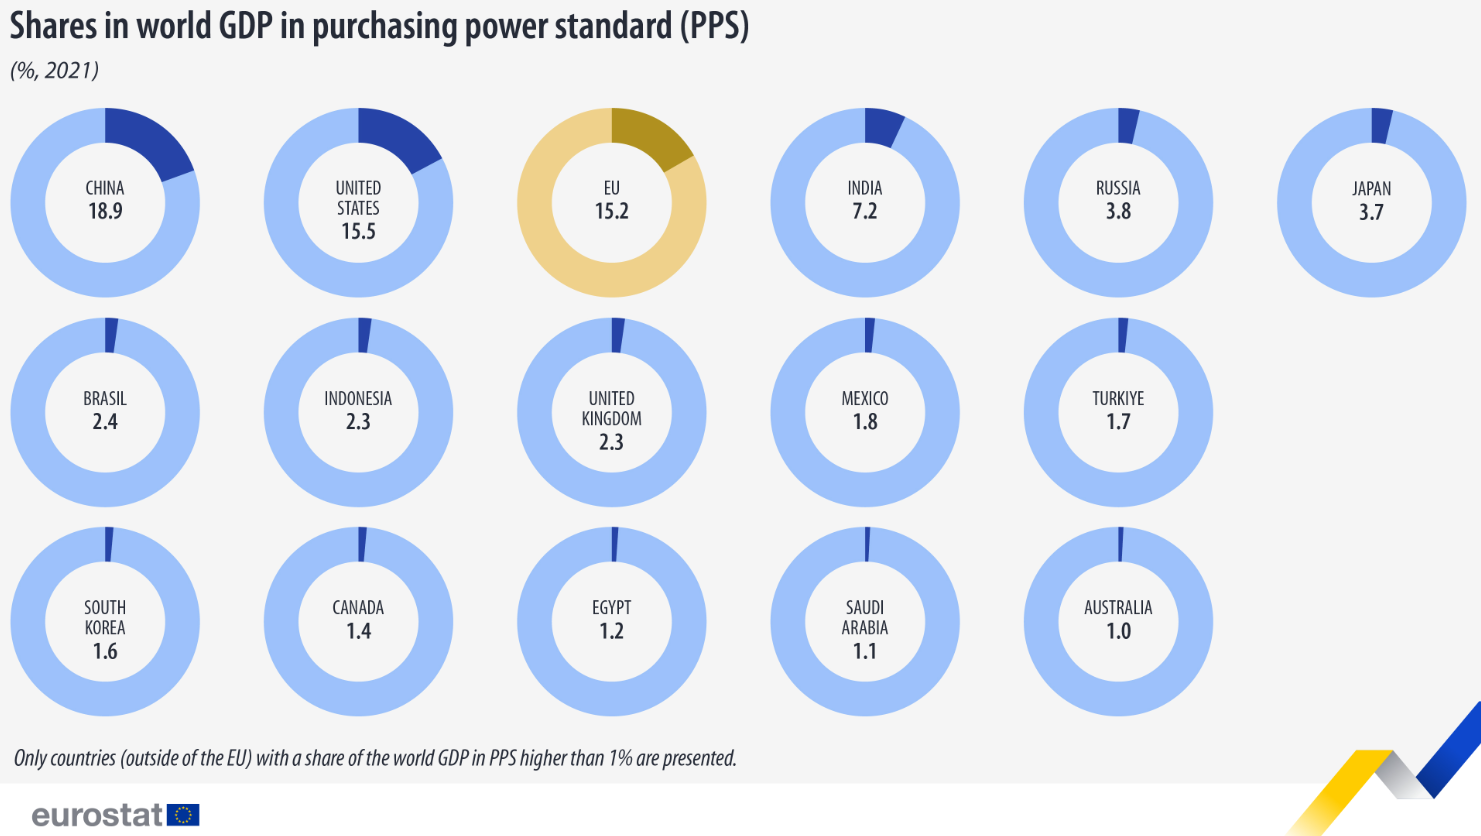 El PIB de la UE representó el 15,2% del PIB mundial expresado en estándares de poder adquisitivo en 2021